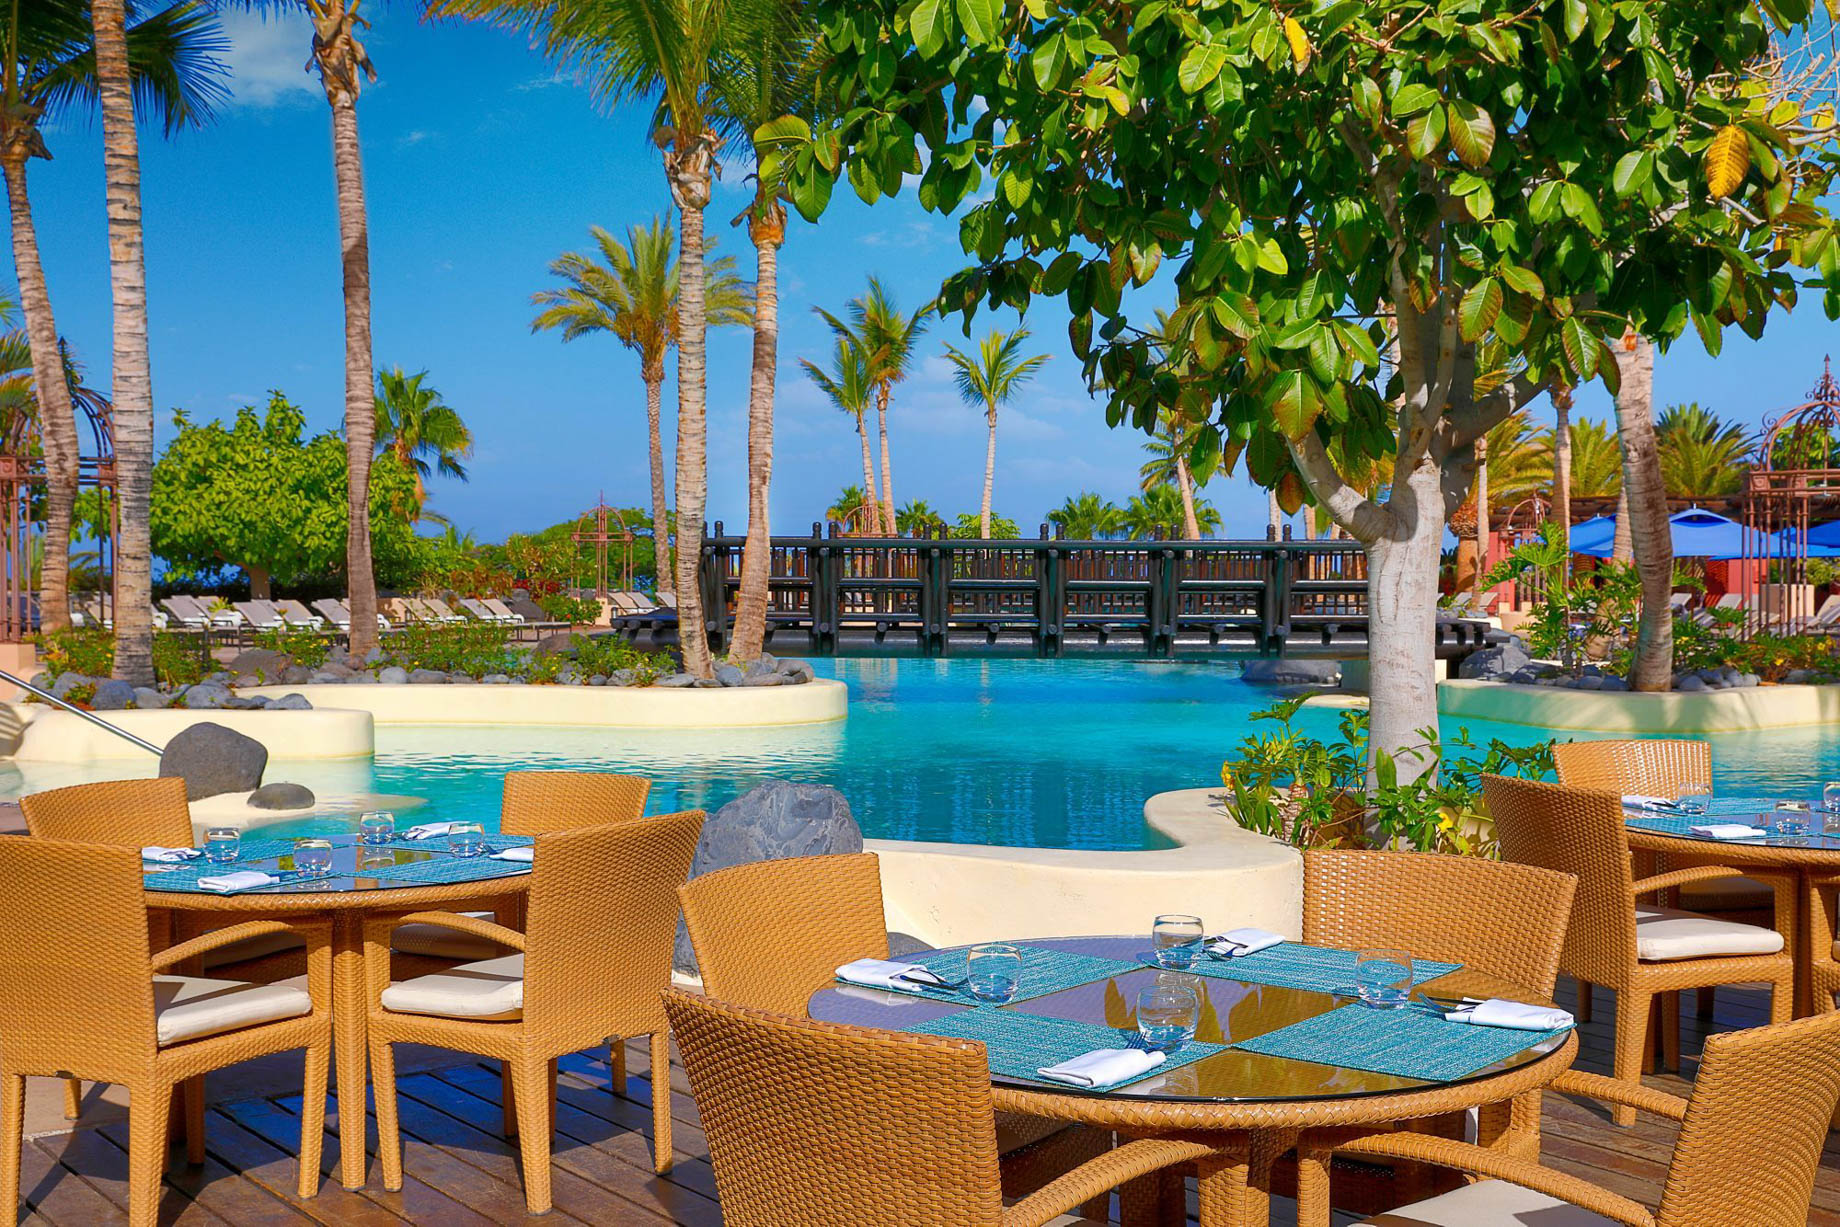 The Ritz-Carlton, Abama Resort - Santa Cruz de Tenerife, Spain - Pool Deck Dining